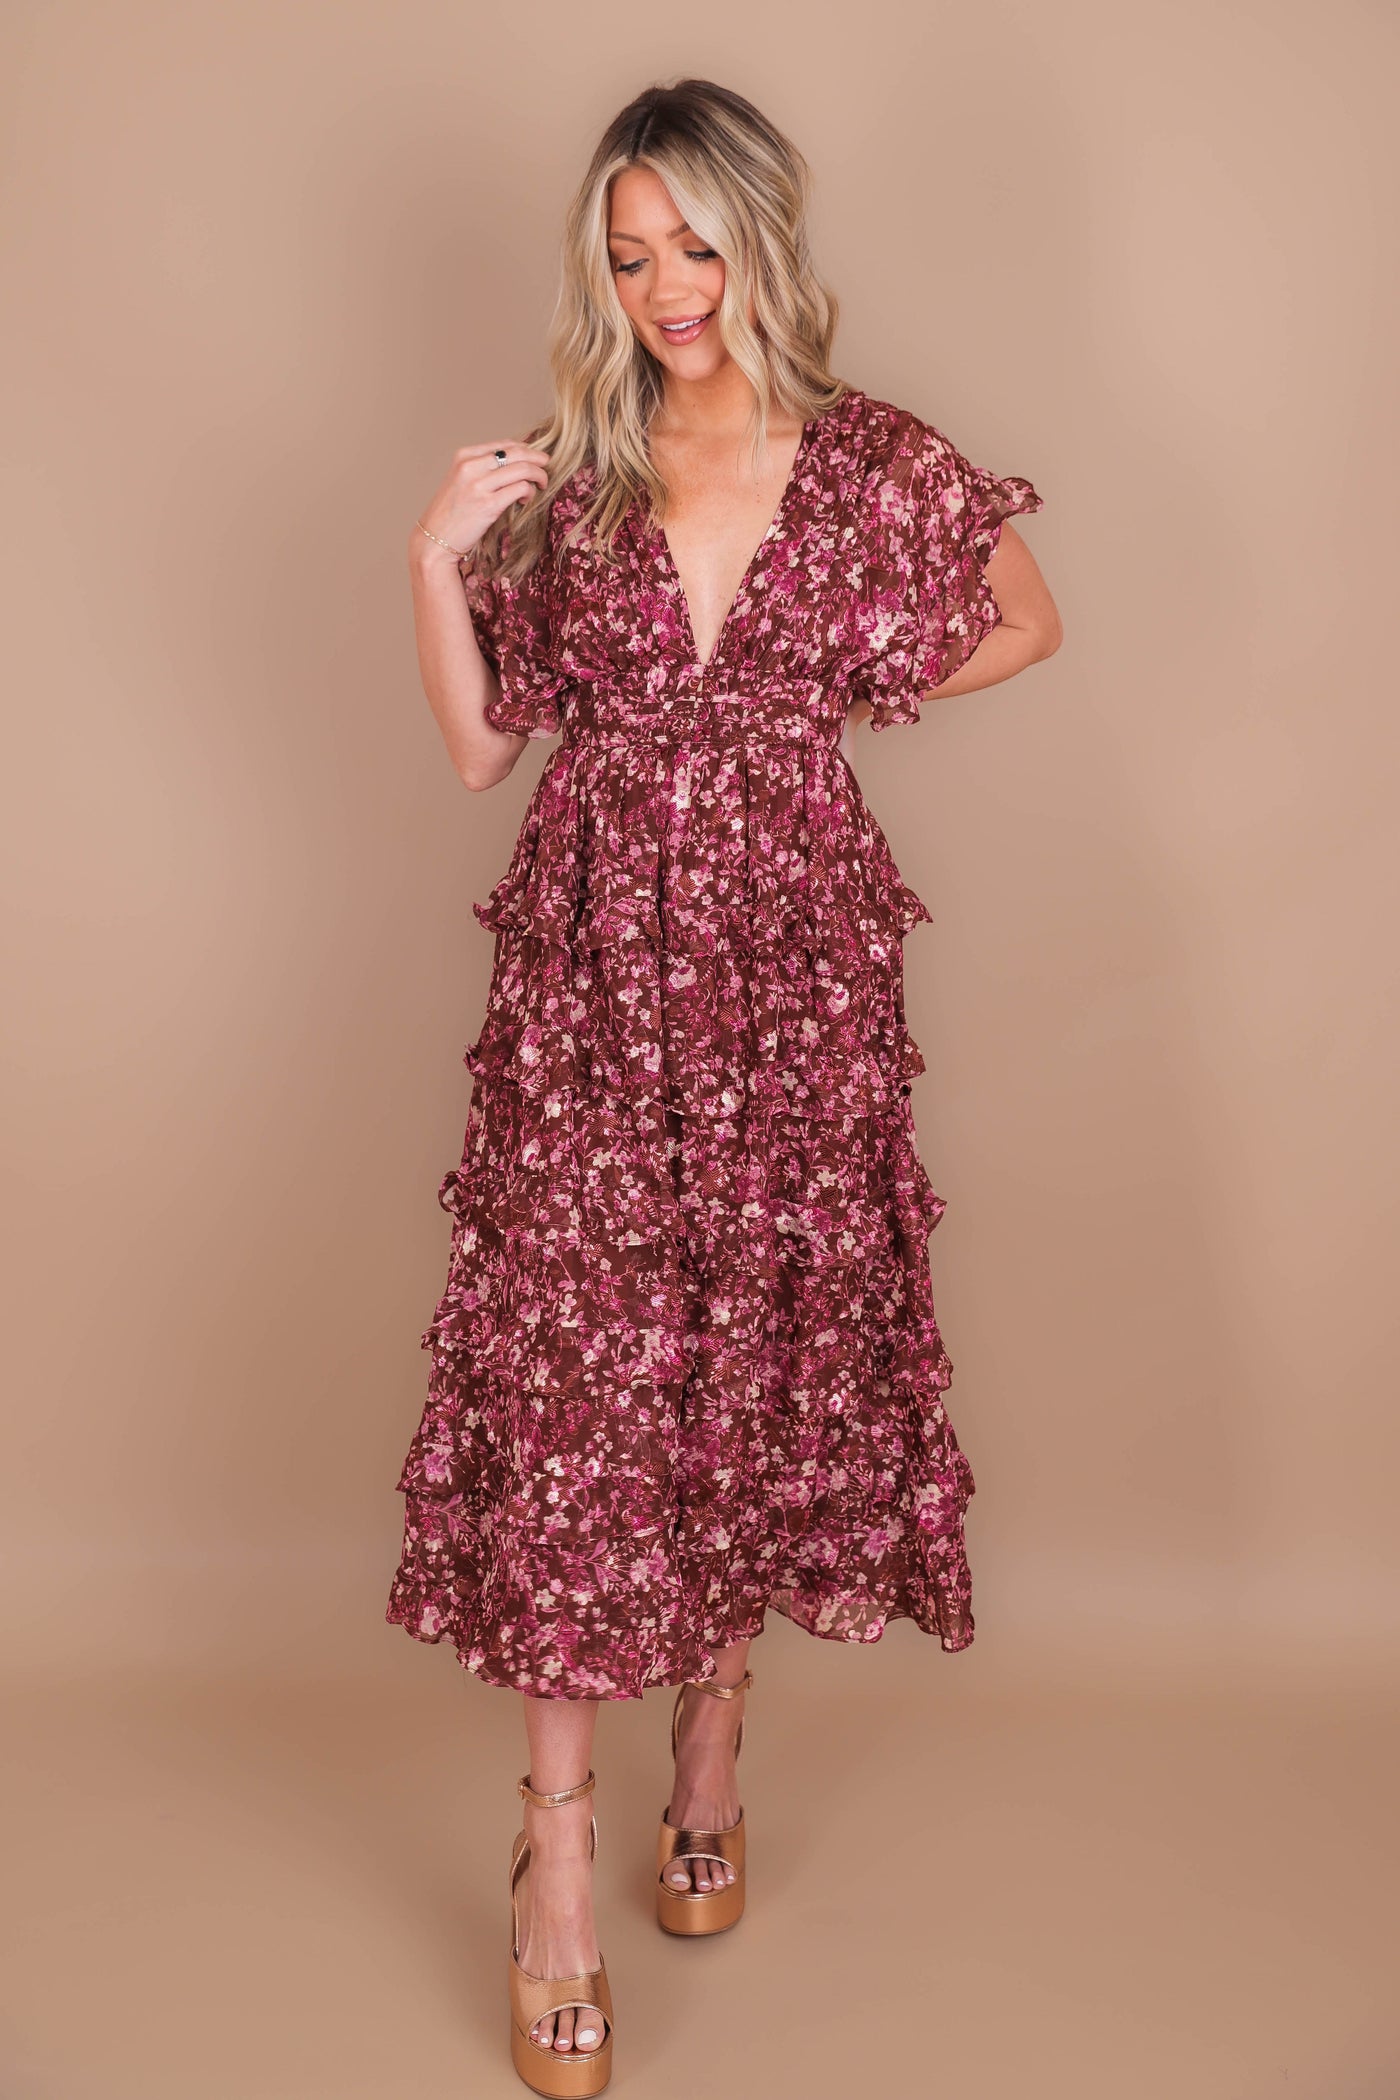 Women's Gorgeous Midi Dress- Women's Floral Print Midi- Storia Midi Dresses